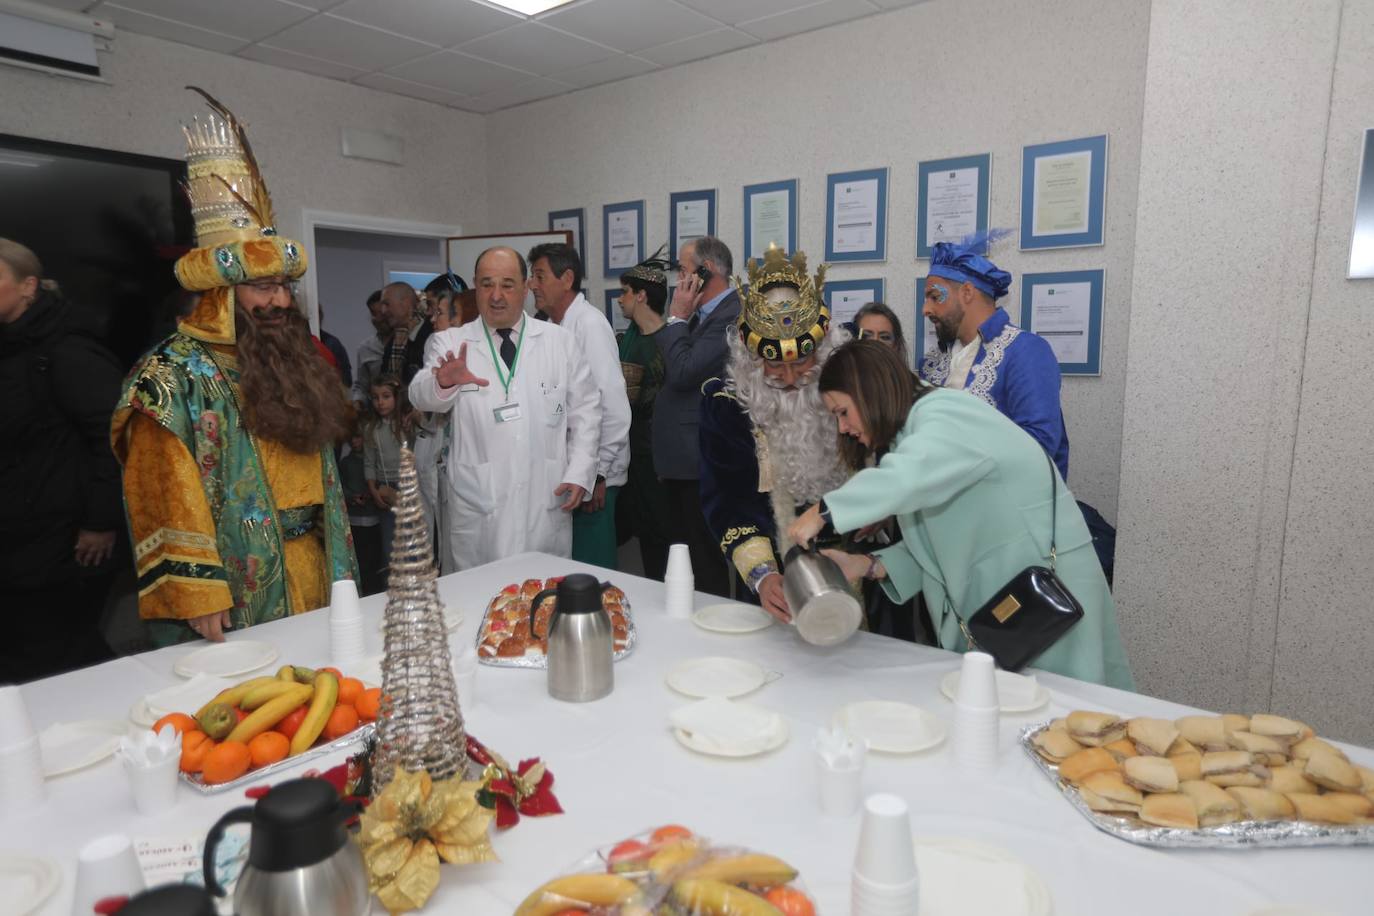 Fotos: Los Reyes Magos visitan a los niños ingresados en el hospital Puerta del Mar de Cádiz